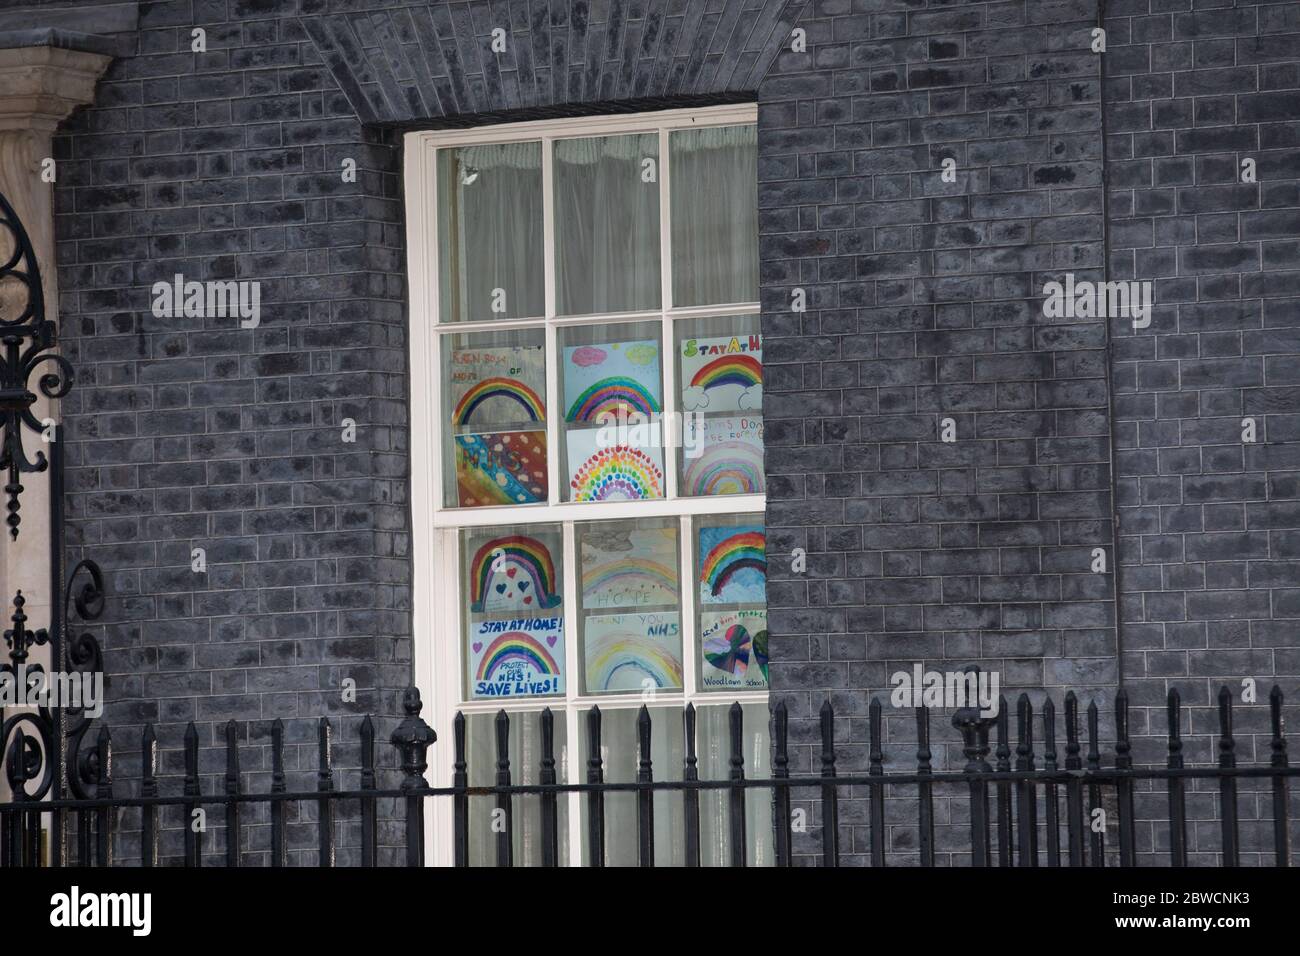 Premierminister Boris Johnson klatscht für NHS, Betreuer und alle wichtigen Arbeiter außerhalb der Nummer 10 Downing Street mit: Atmosphäre wo: London, Großbritannien Wann: 30 Apr 2020 Quelle: Phil Lewis/WENN Stockfoto